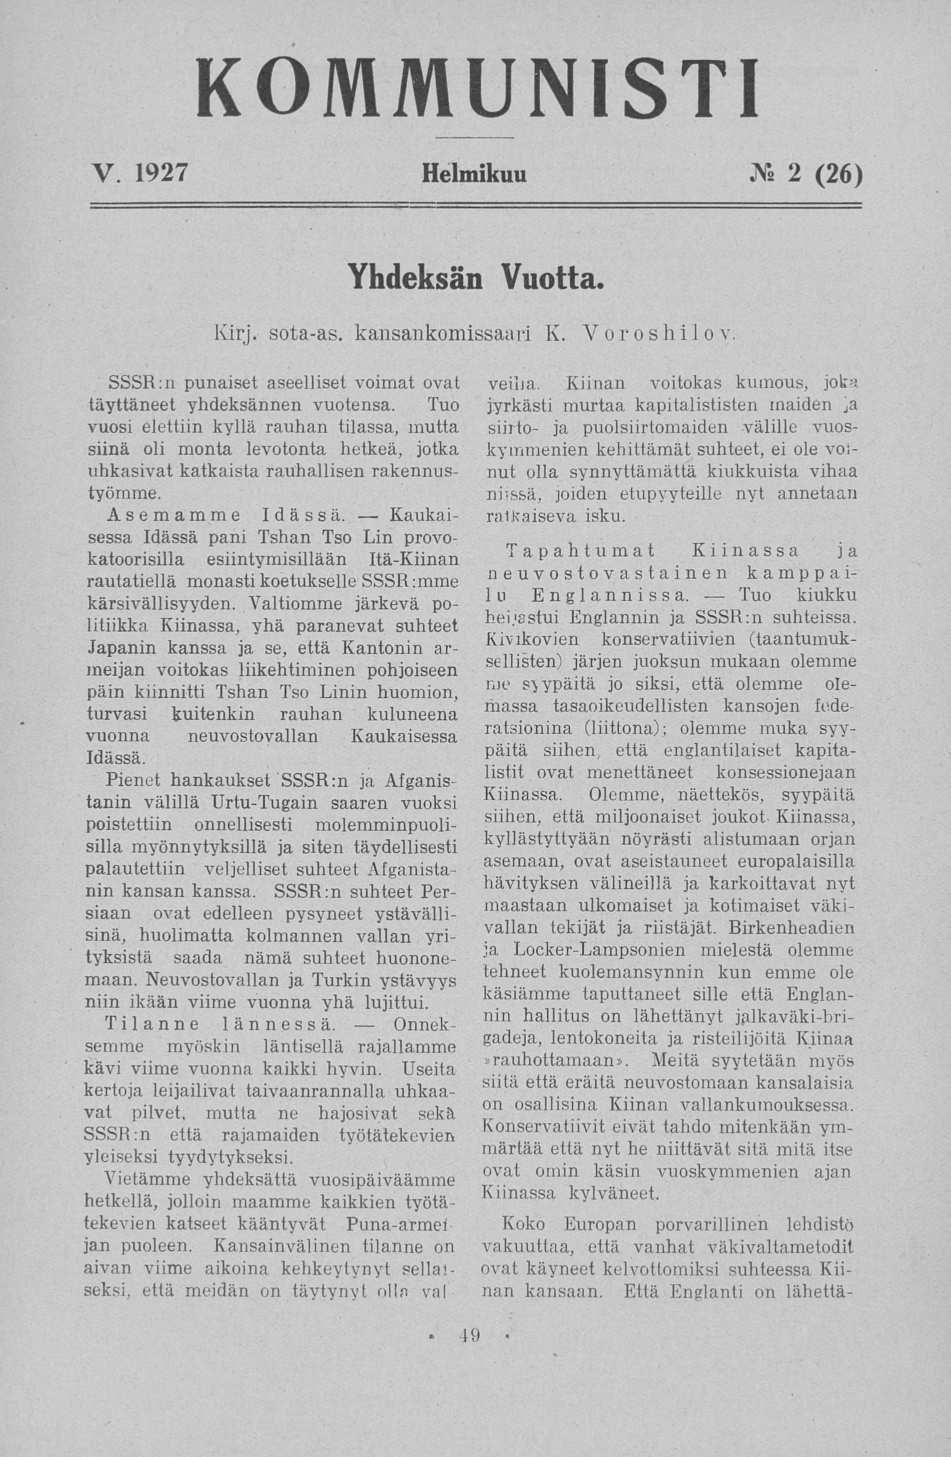 V. 1927 Helmikuu JV«2 (26) Yhdeksän Vuotta. Kirj. sota-as. kansankomissaari K. Yoroshilov SSSR:n punaiset aseelliset voimat ovat täyttäneet yhdeksännen vuotensa.